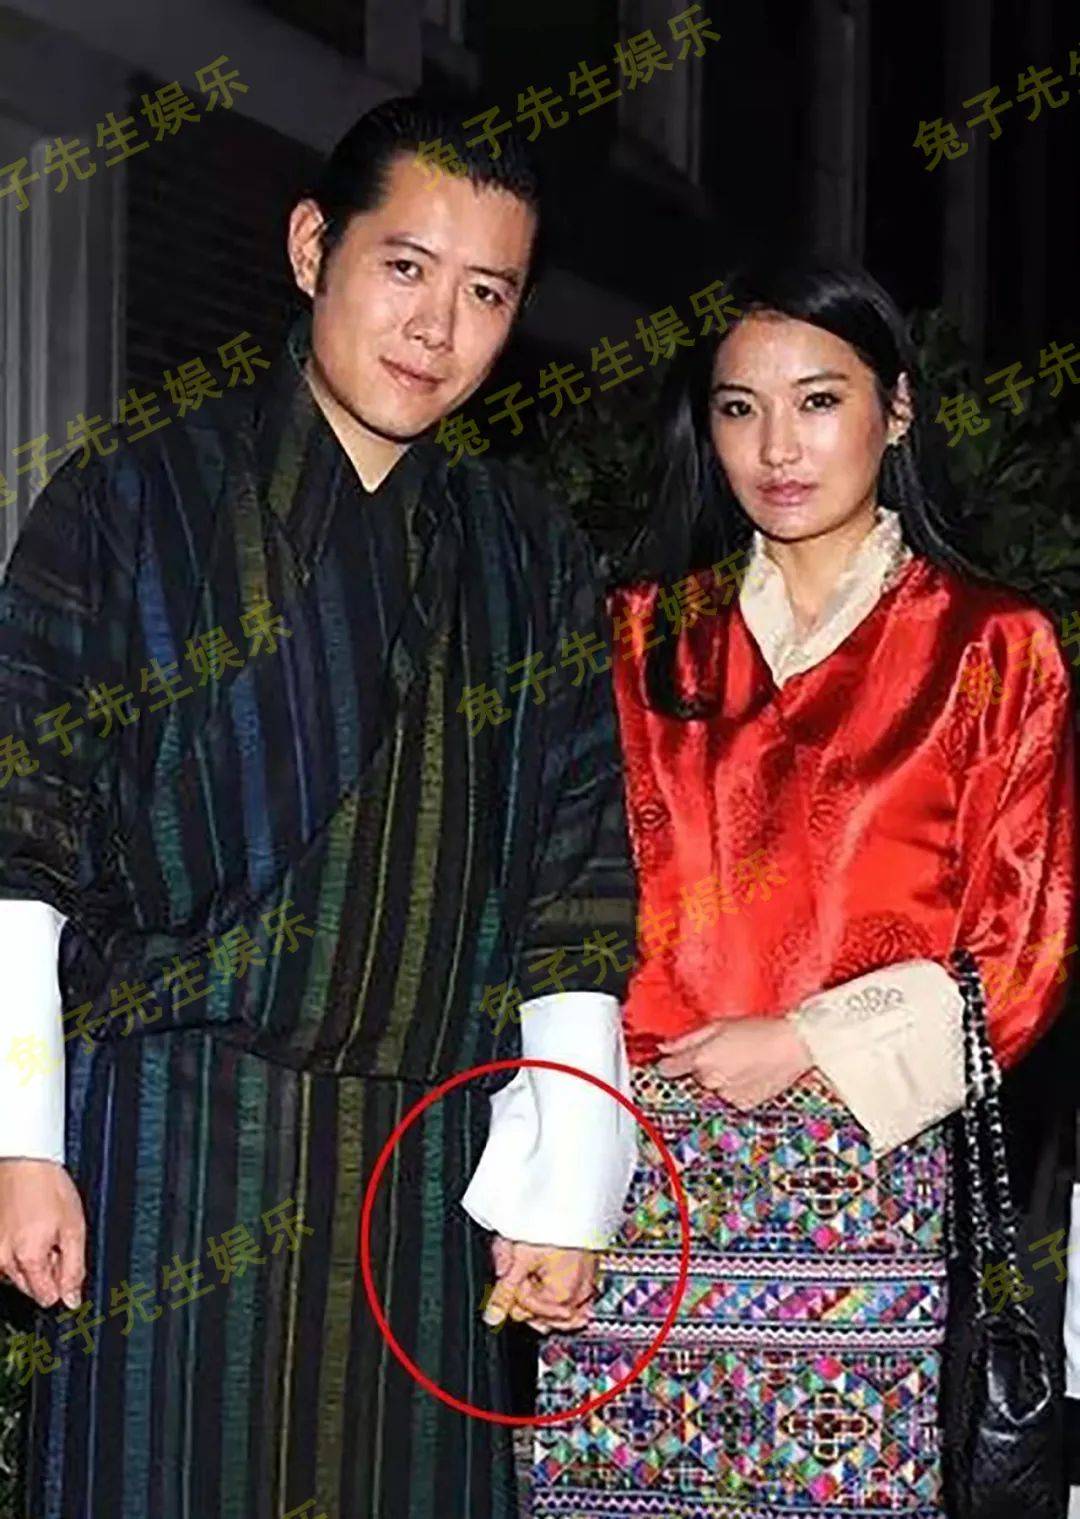 40岁不丹国王真可爱,用手指在30岁王后衣袖上画圈圈,爱得很纯真